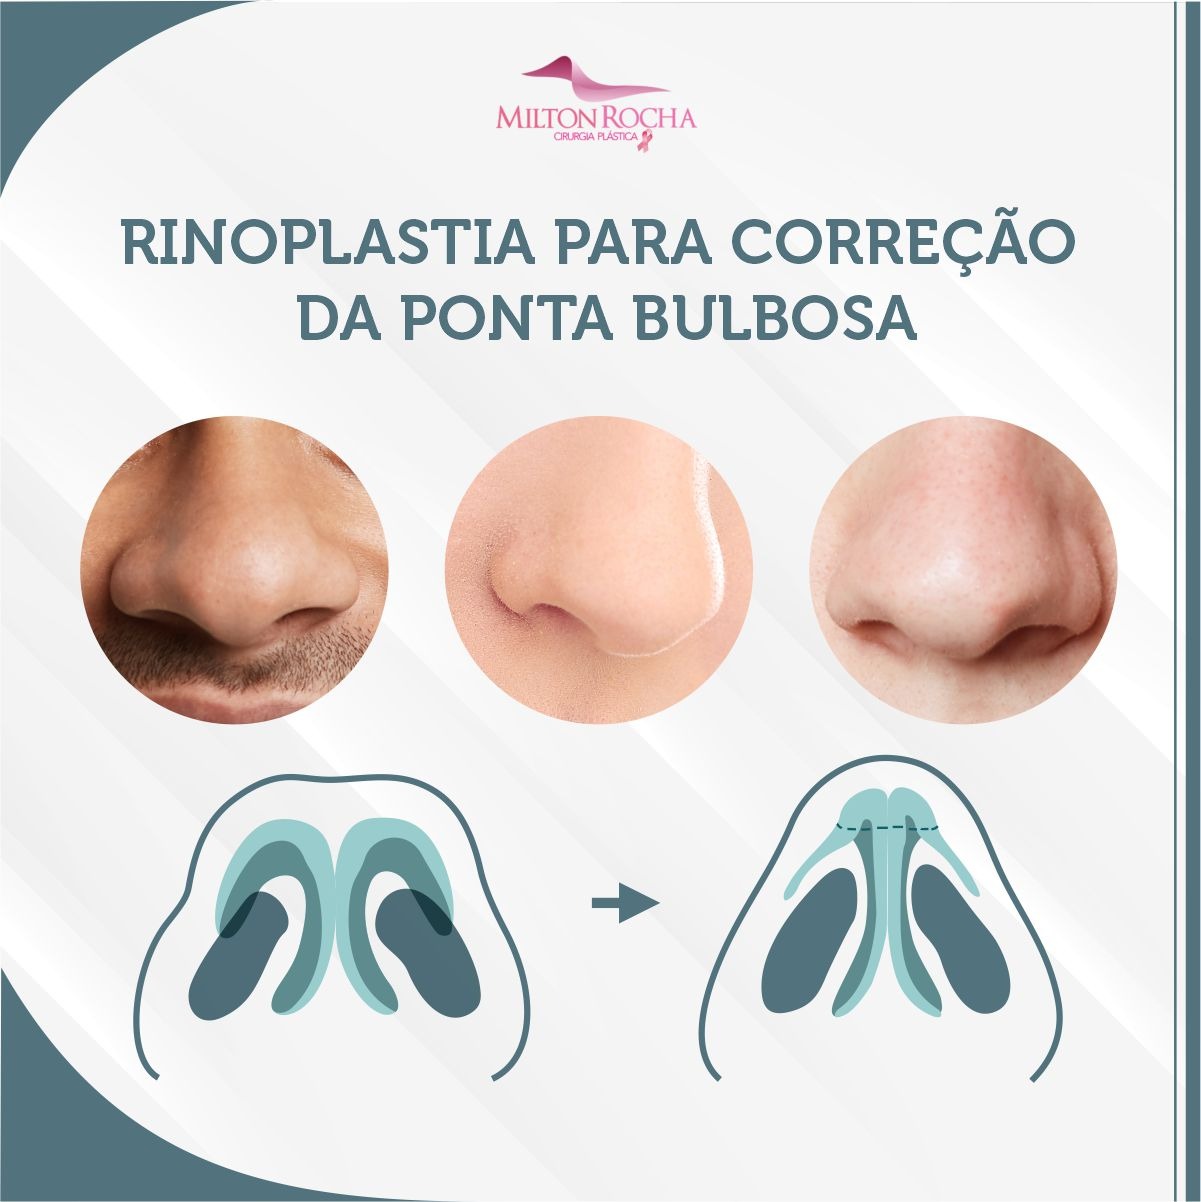 You are currently viewing Cirurgia Plástica Recife – Rinoplastia para correção da ponta bulbosa